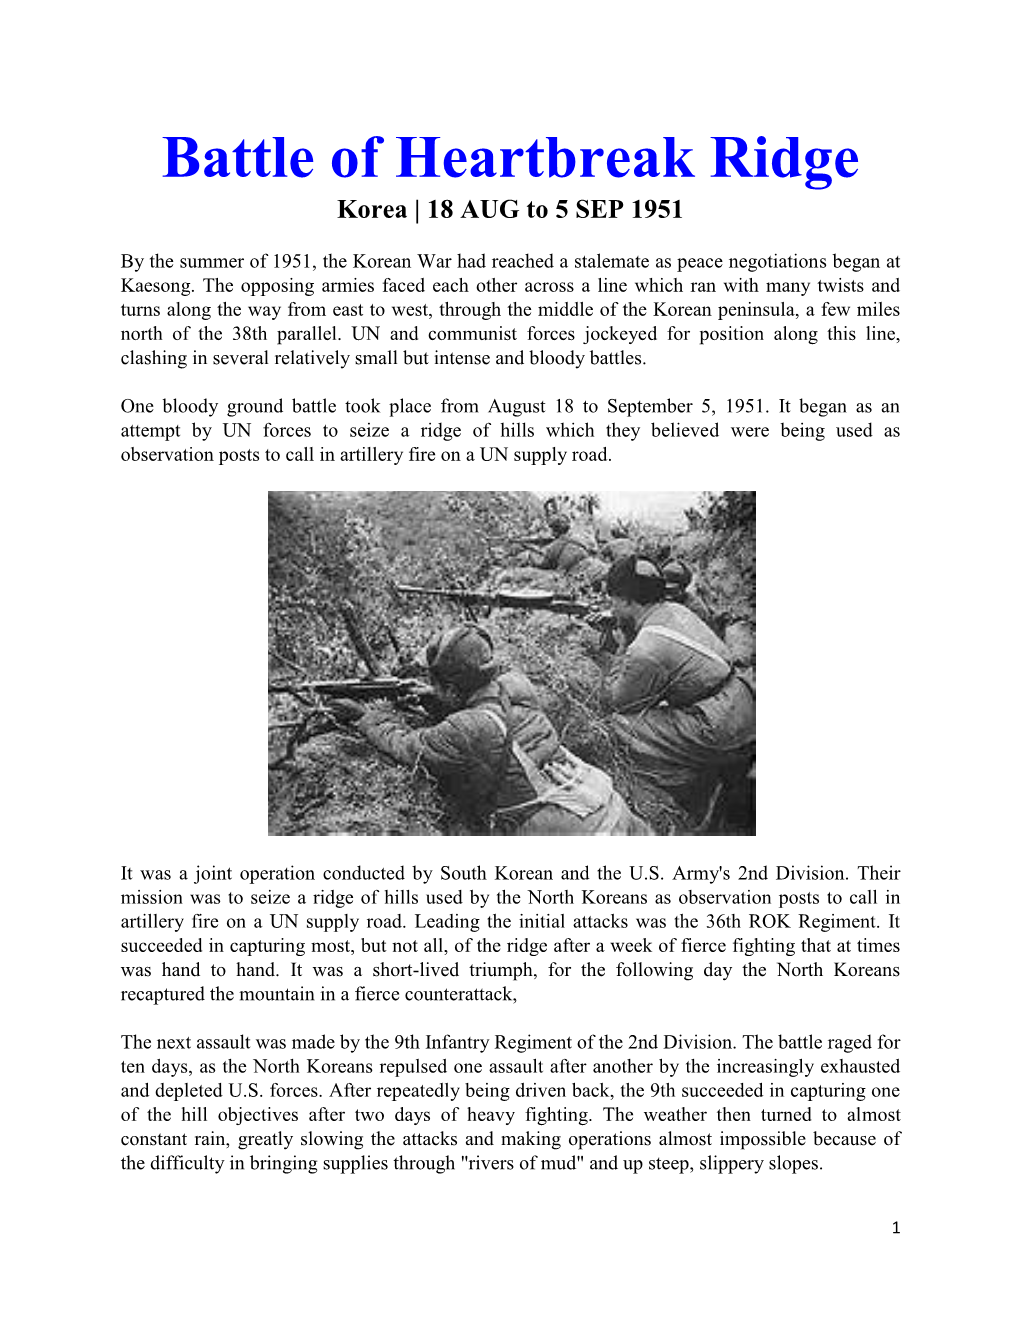 Korea Battle of Heartbreak Ridge